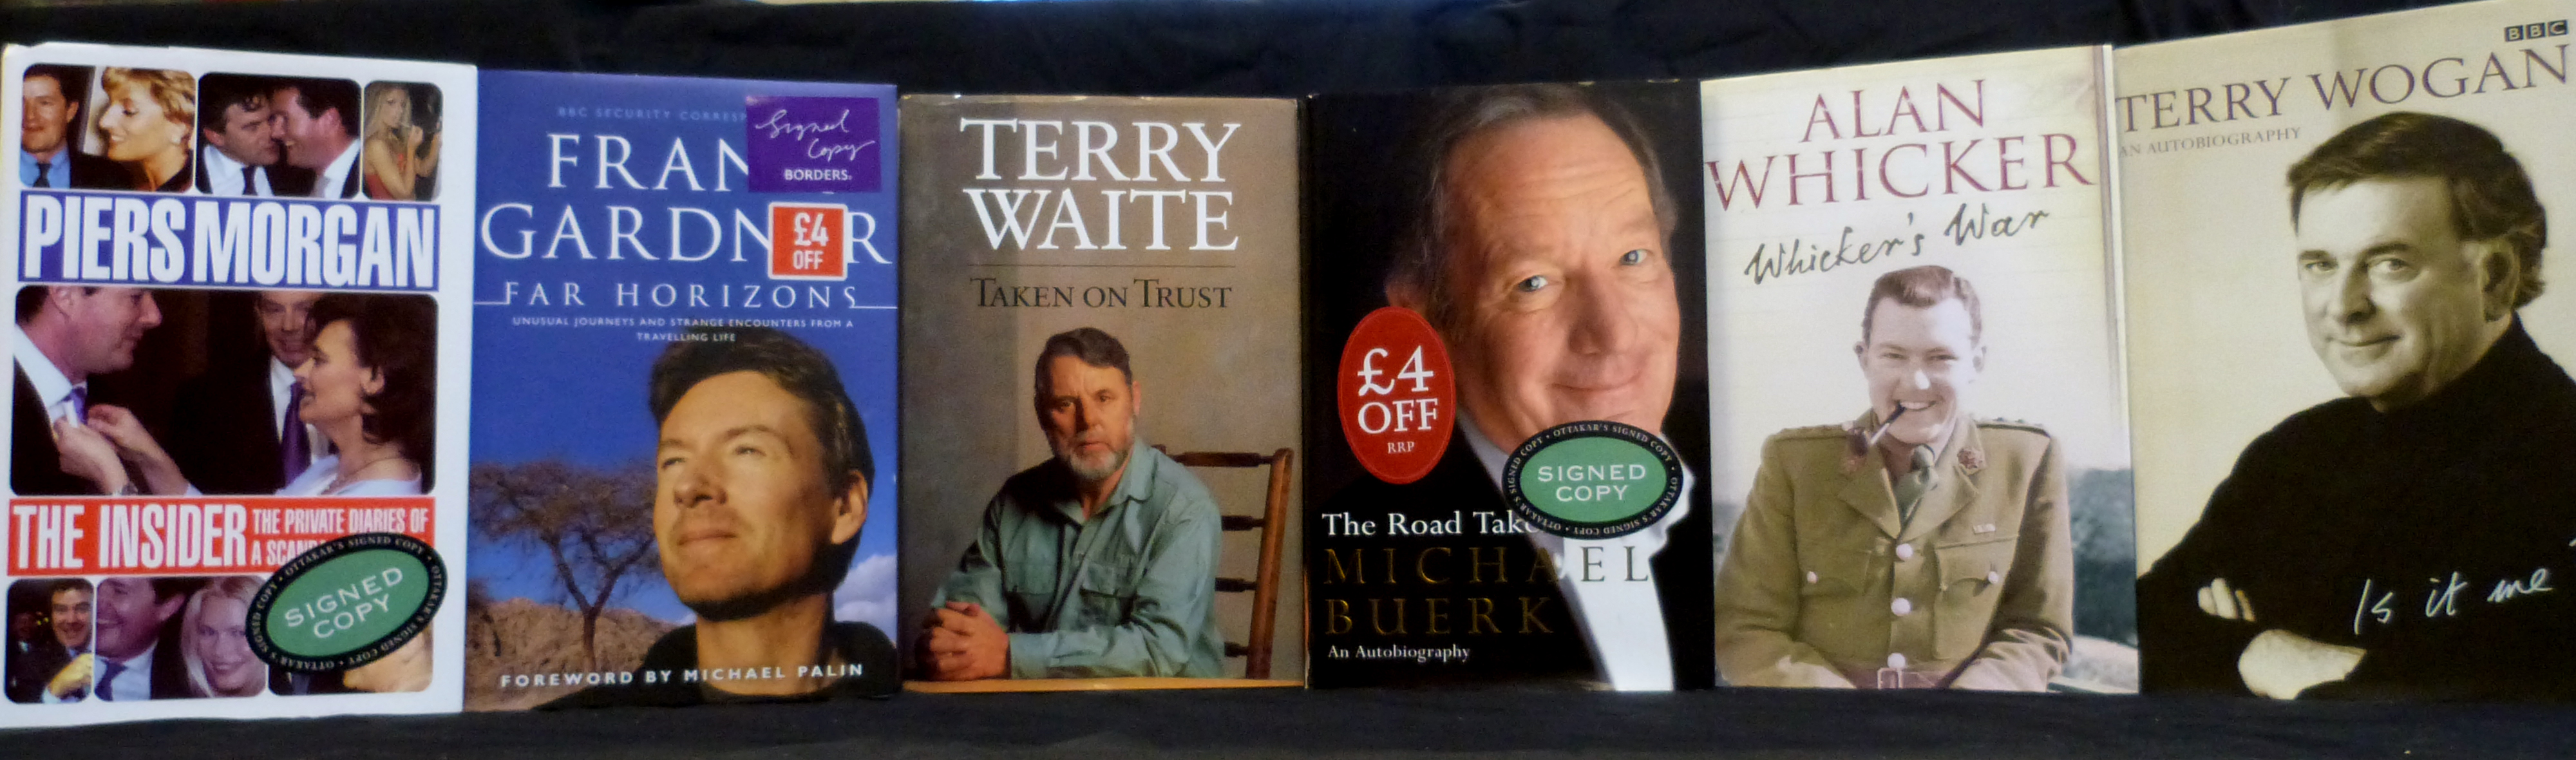 TERRY WAITE: TAKEN ON TRUST, London, Hodder & Stoughton, 1993, 1st edition, signed, original